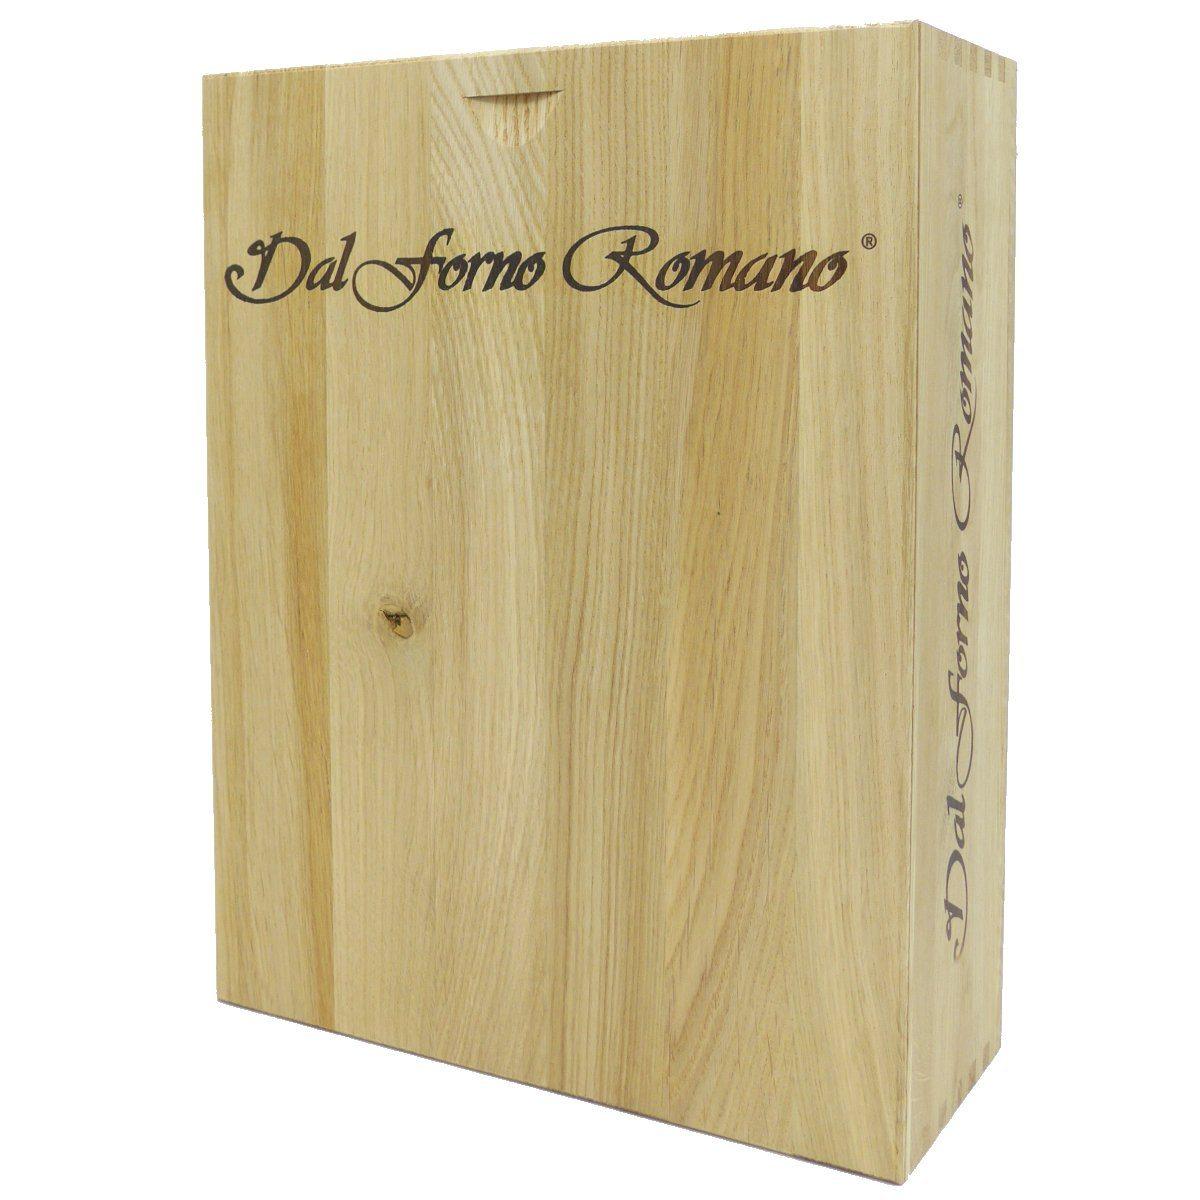 Romano dal Forno Historical Release - Amarone 2008 x 2, 2009 x 1 - Wine Set - GDV Fine Wines® - 2008 x 2, 2009 x 1, 750ml x 3btls, 95, 97, 99, AG98, Amarone della Valpolicella, Italy, JS98, Romano dal Forno, Veneto, WA96, Wine Product, Wine Set